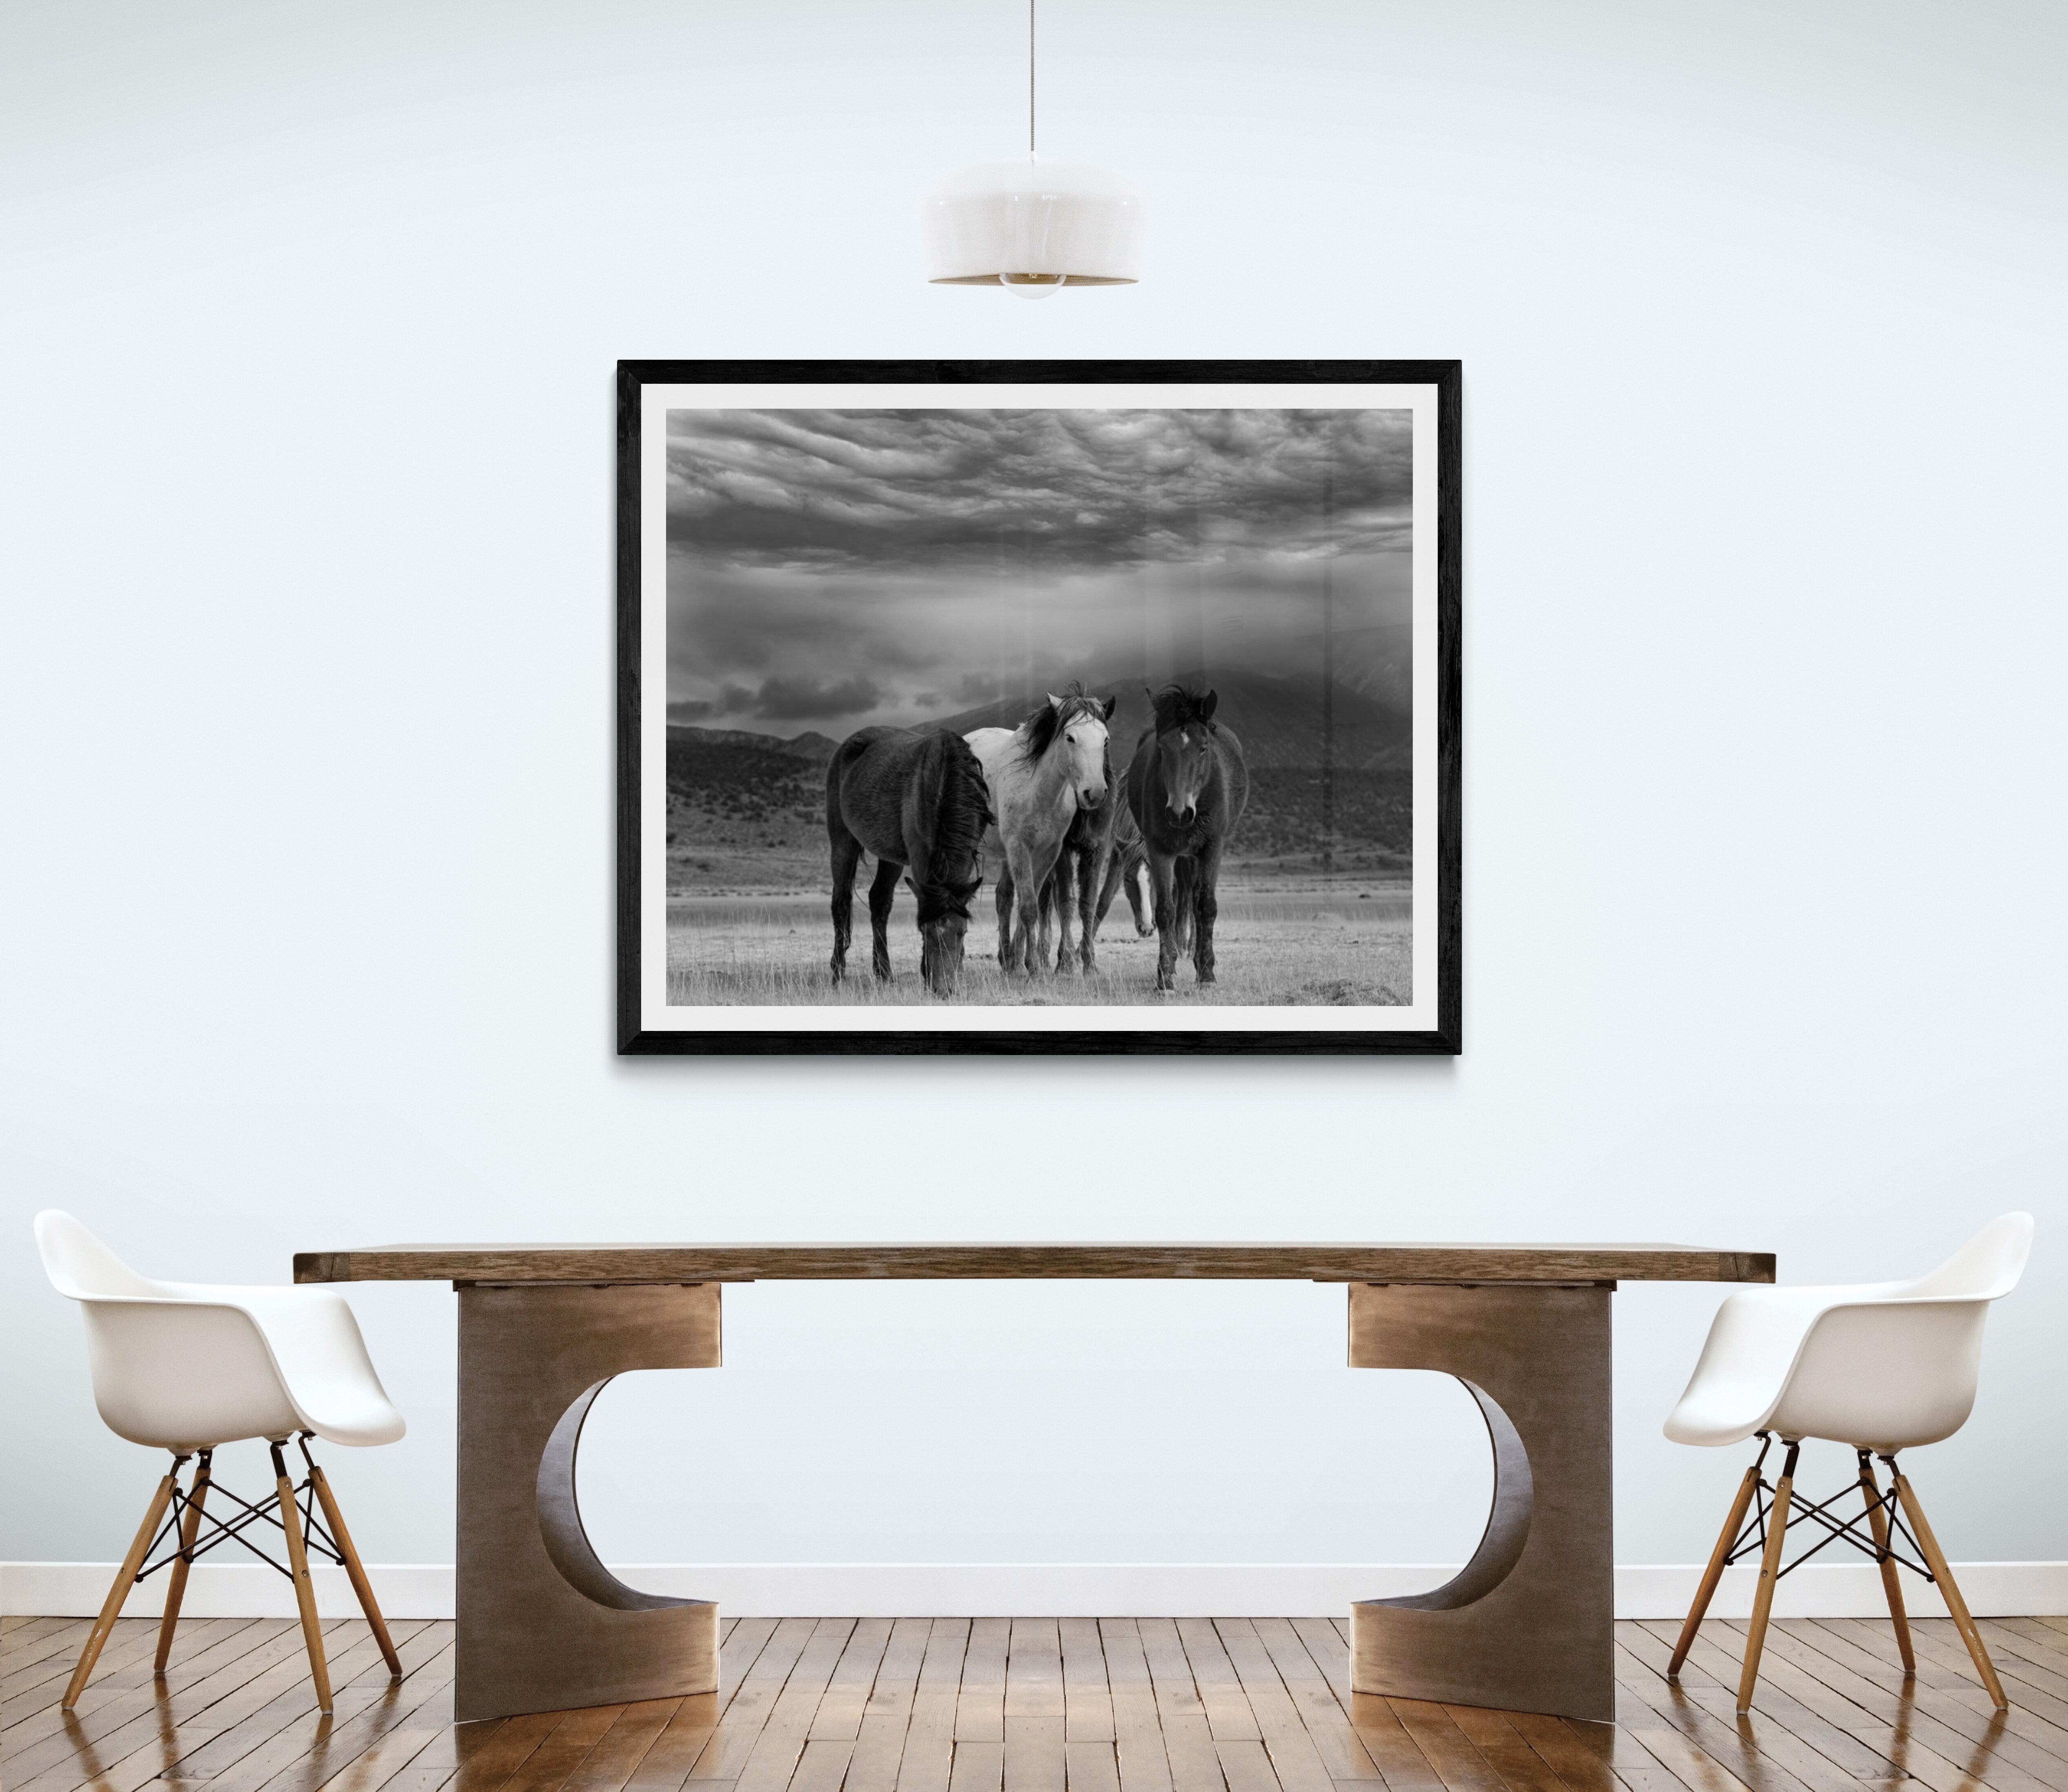 Duvet et chevaux 45x60  Photographie en noir et blanc Chevaux sauvages Mustangs Non signé - Print de Shane Russeck